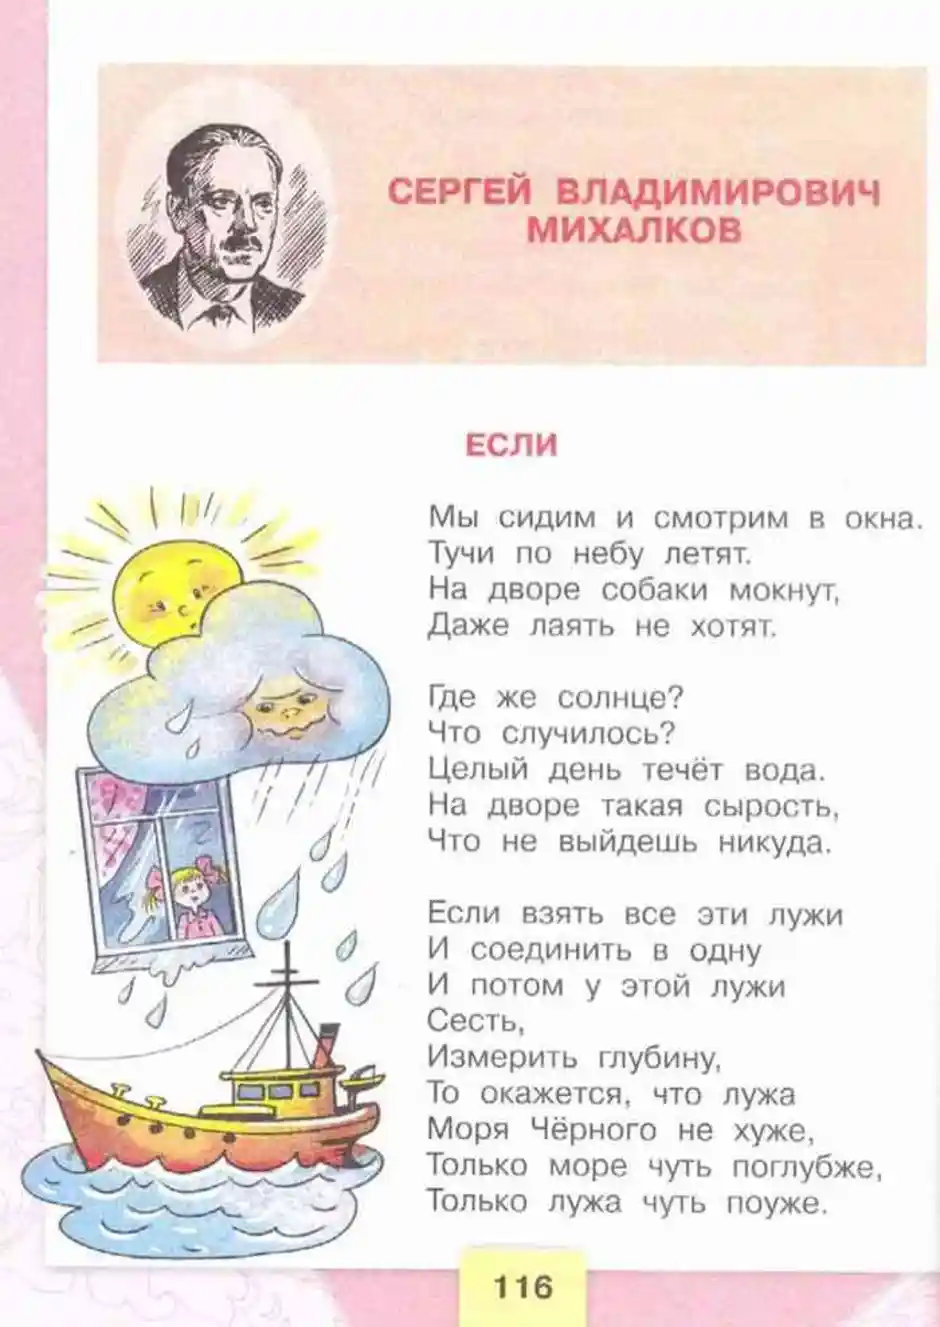 Почему михалков назвал стихотворение если. Стихотворение Сергея Владимировича Михалкова если.